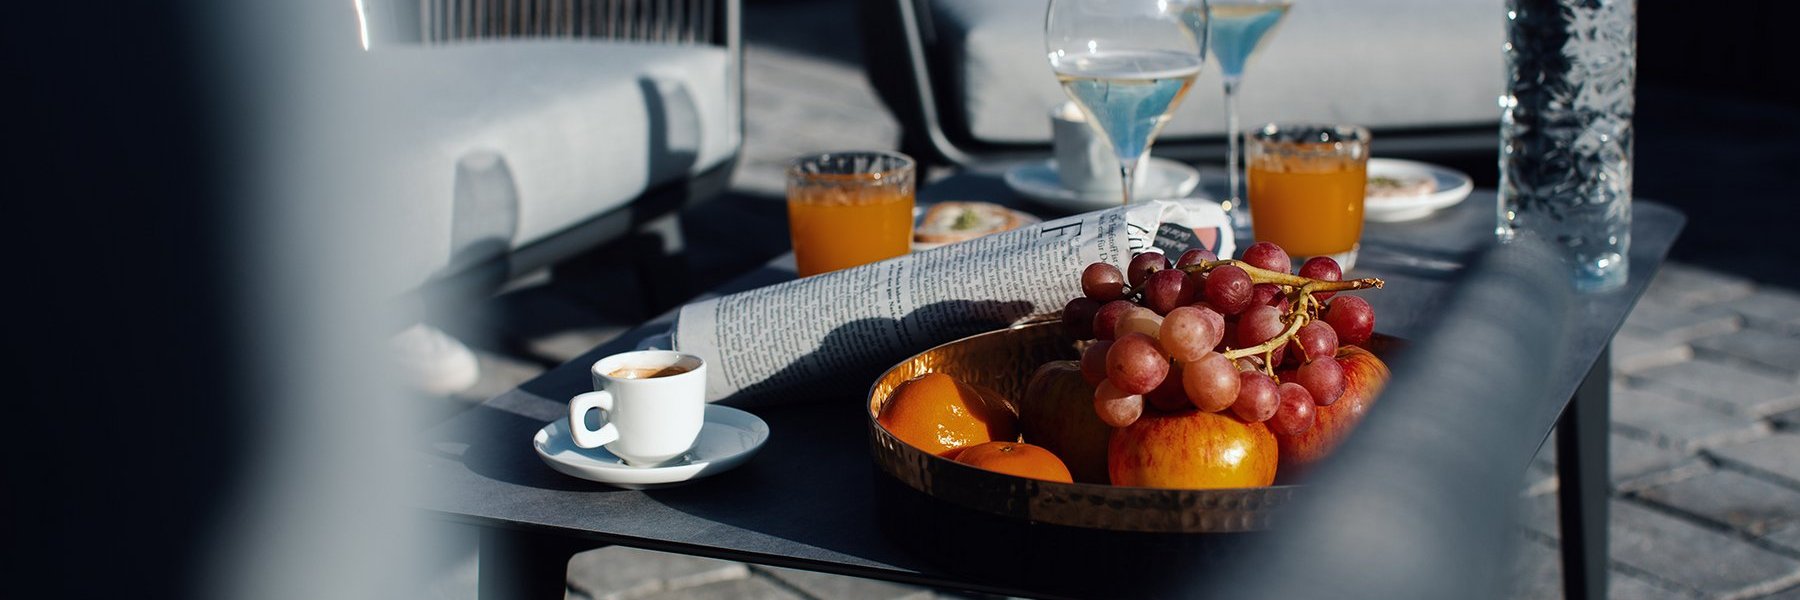 Tisch auf einer Terrasse mit Kaffee, Orangensaft, Champagner und einem Obstteller